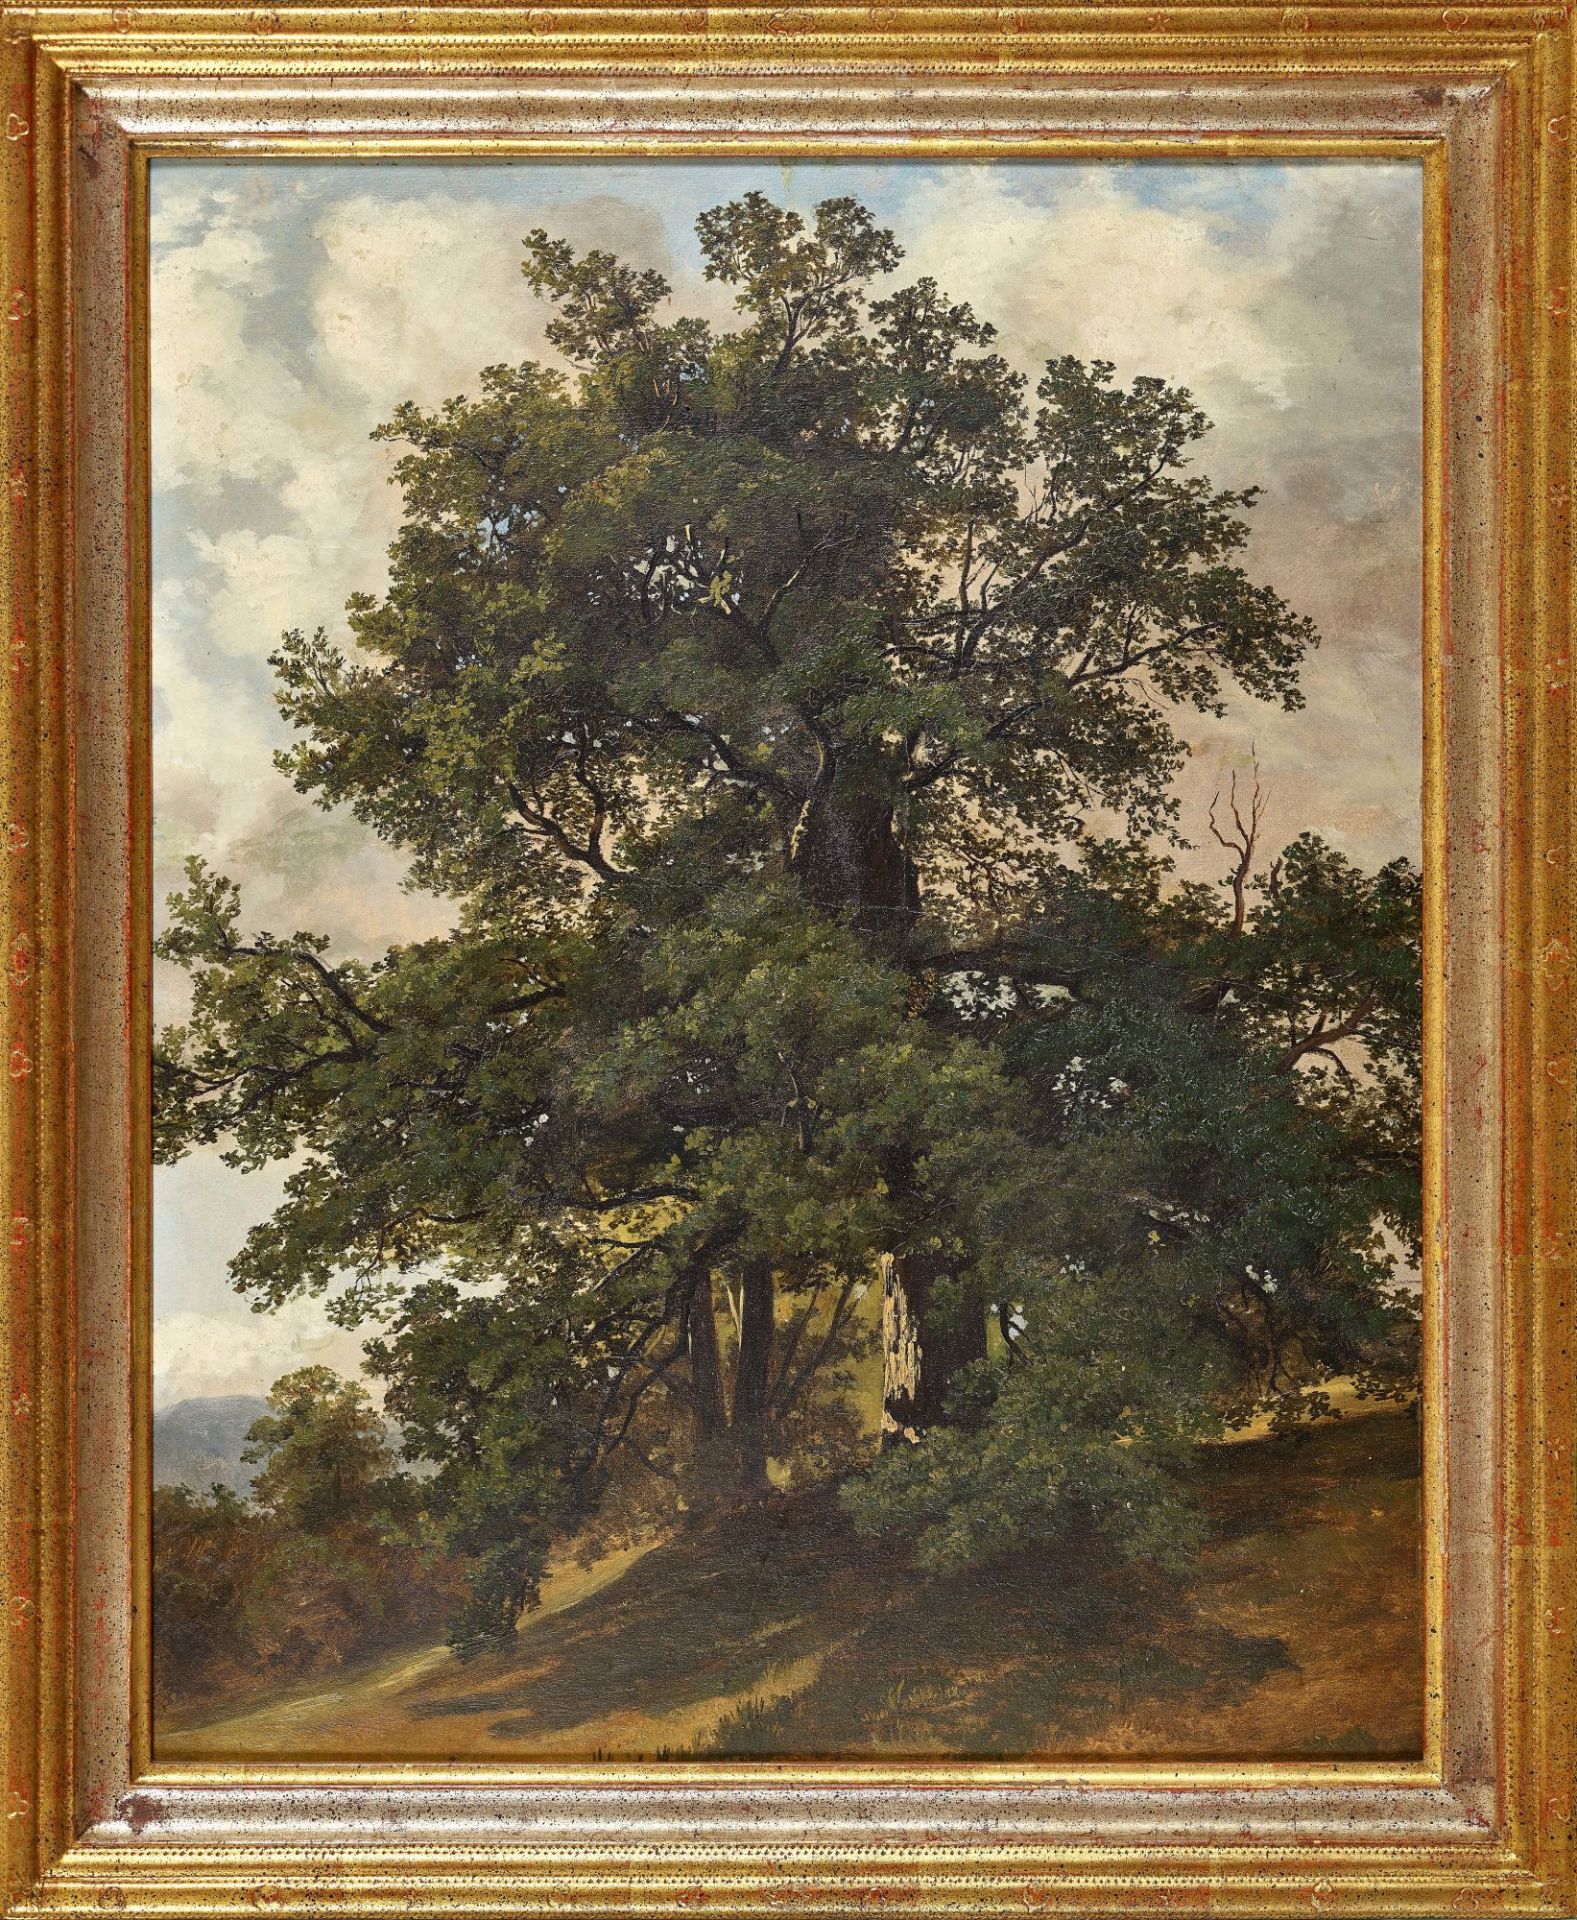 SCHWEIZ, 19. JH.: Landschaft mit Bäumen. - Image 2 of 2